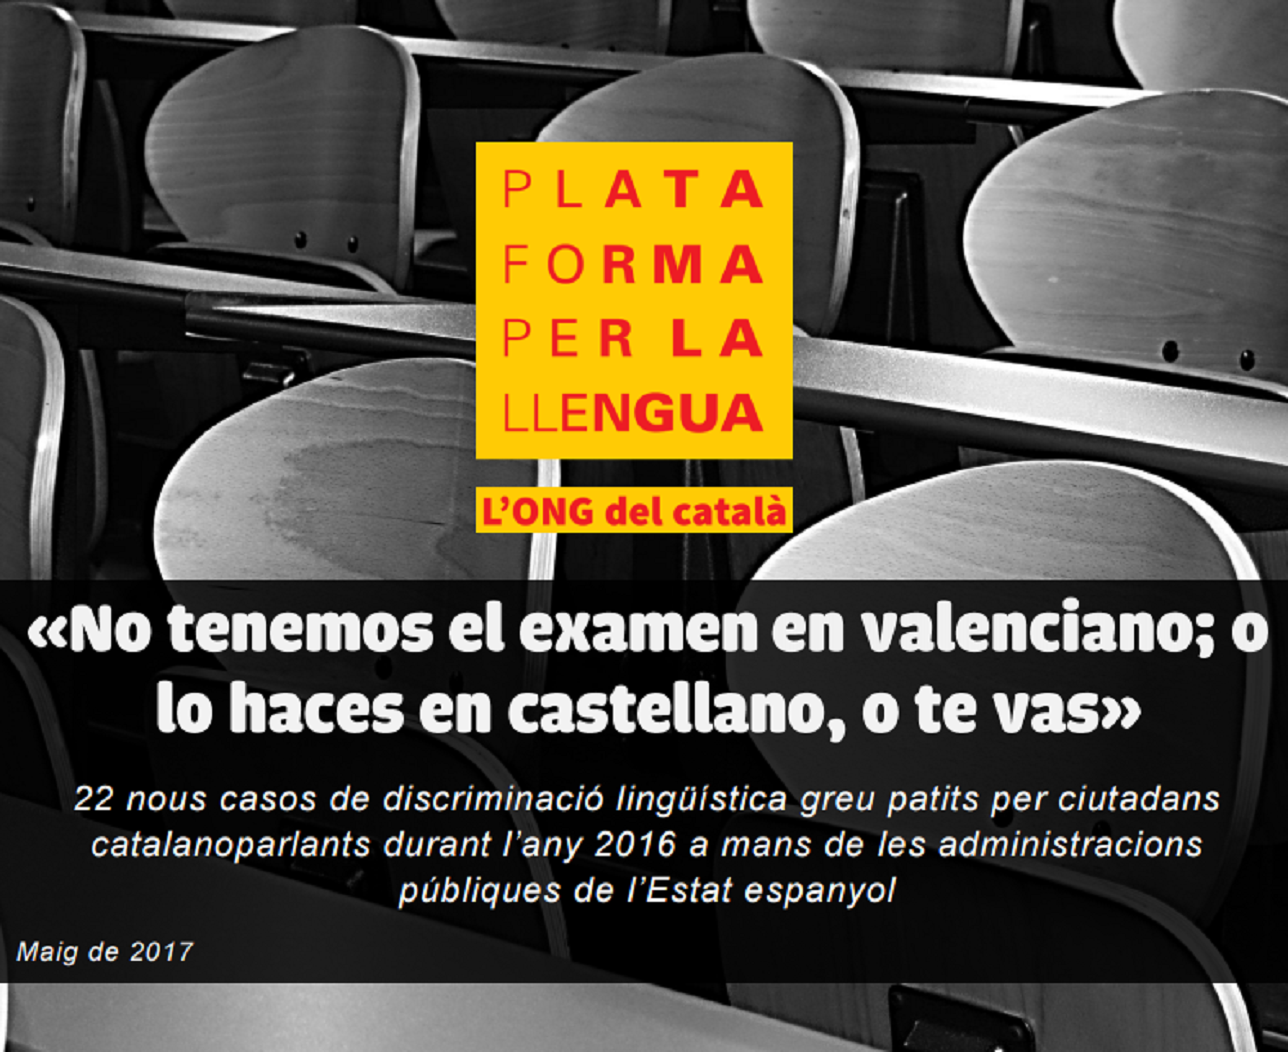 La normalització de l'ús i ensenyament del valencià es resoldrà als tribunals